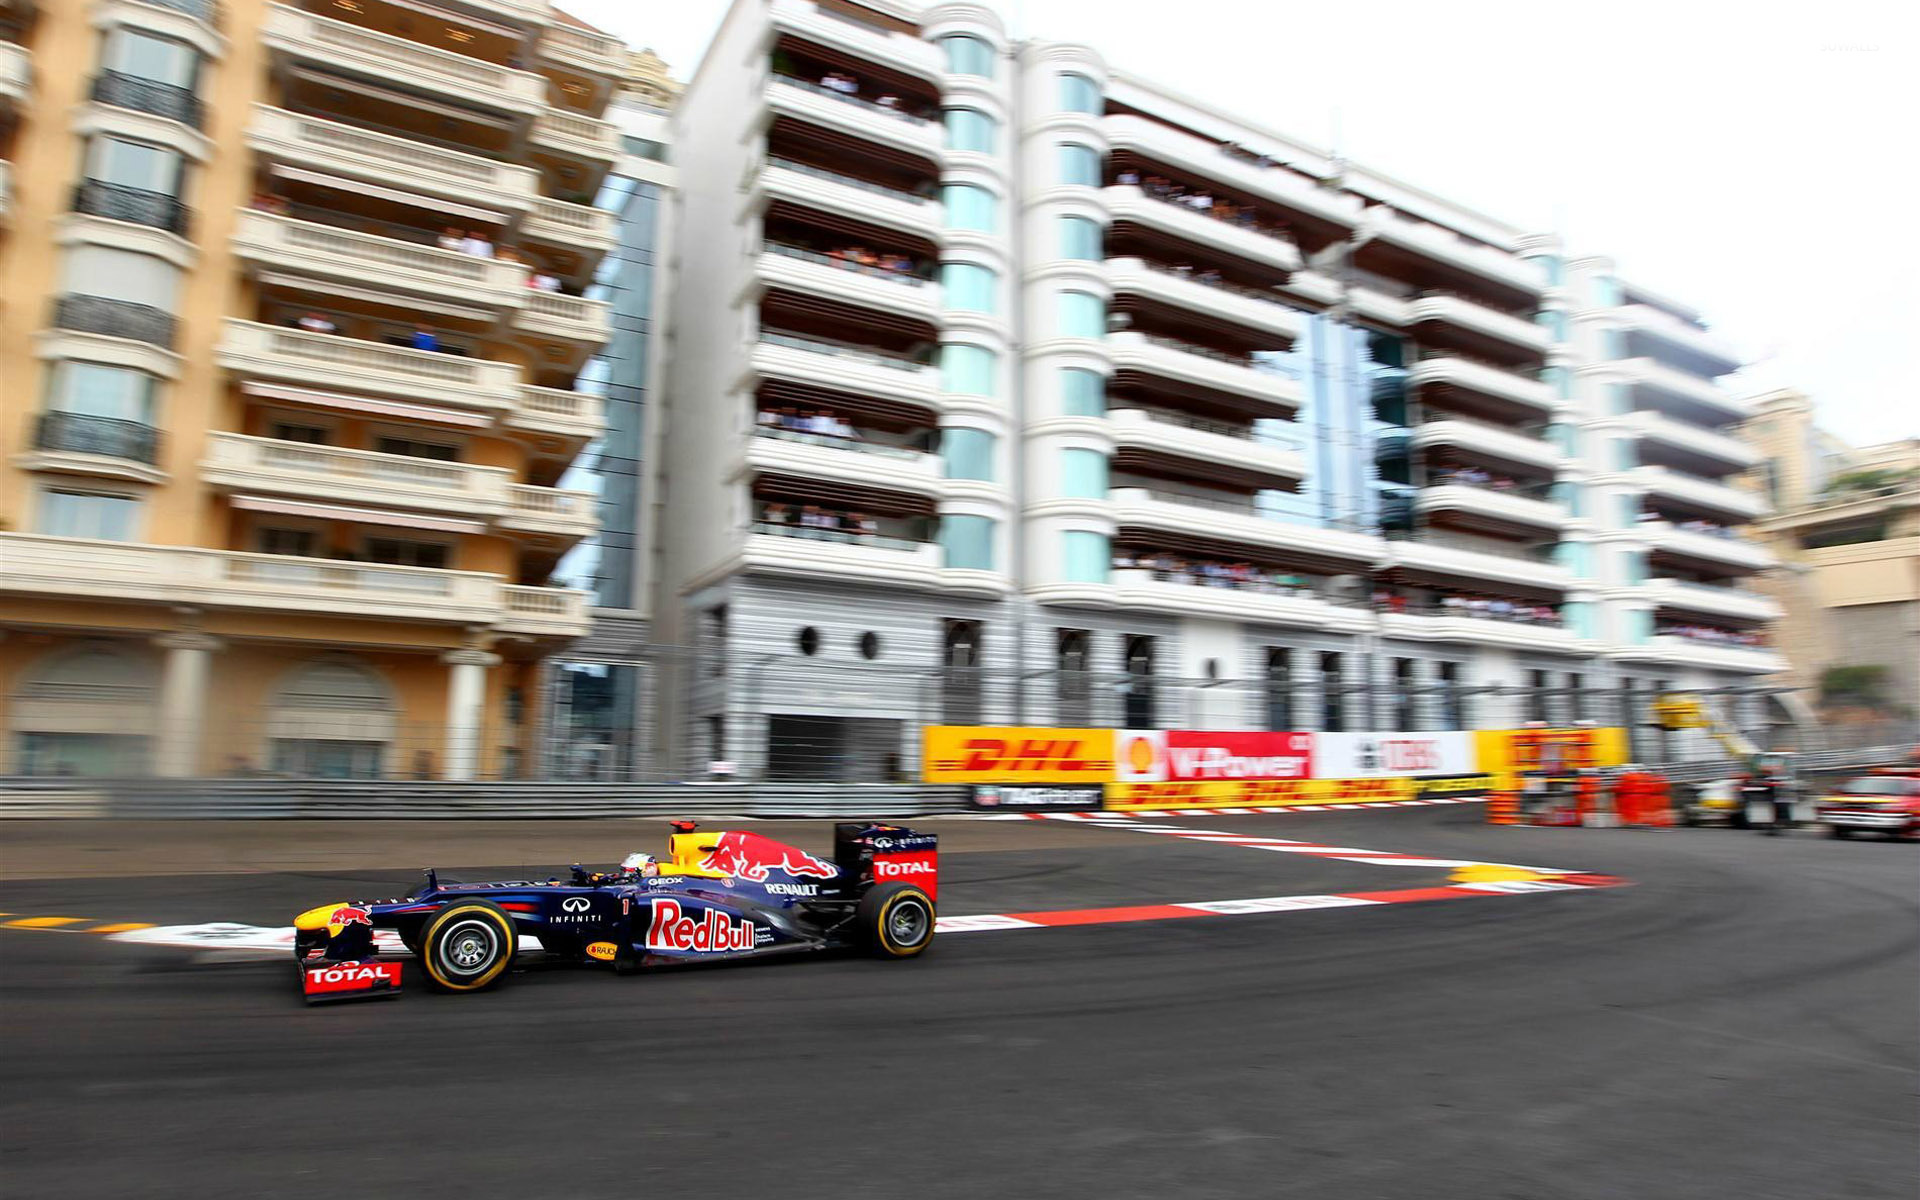 Monaco Grand Prix Wallpaper Car